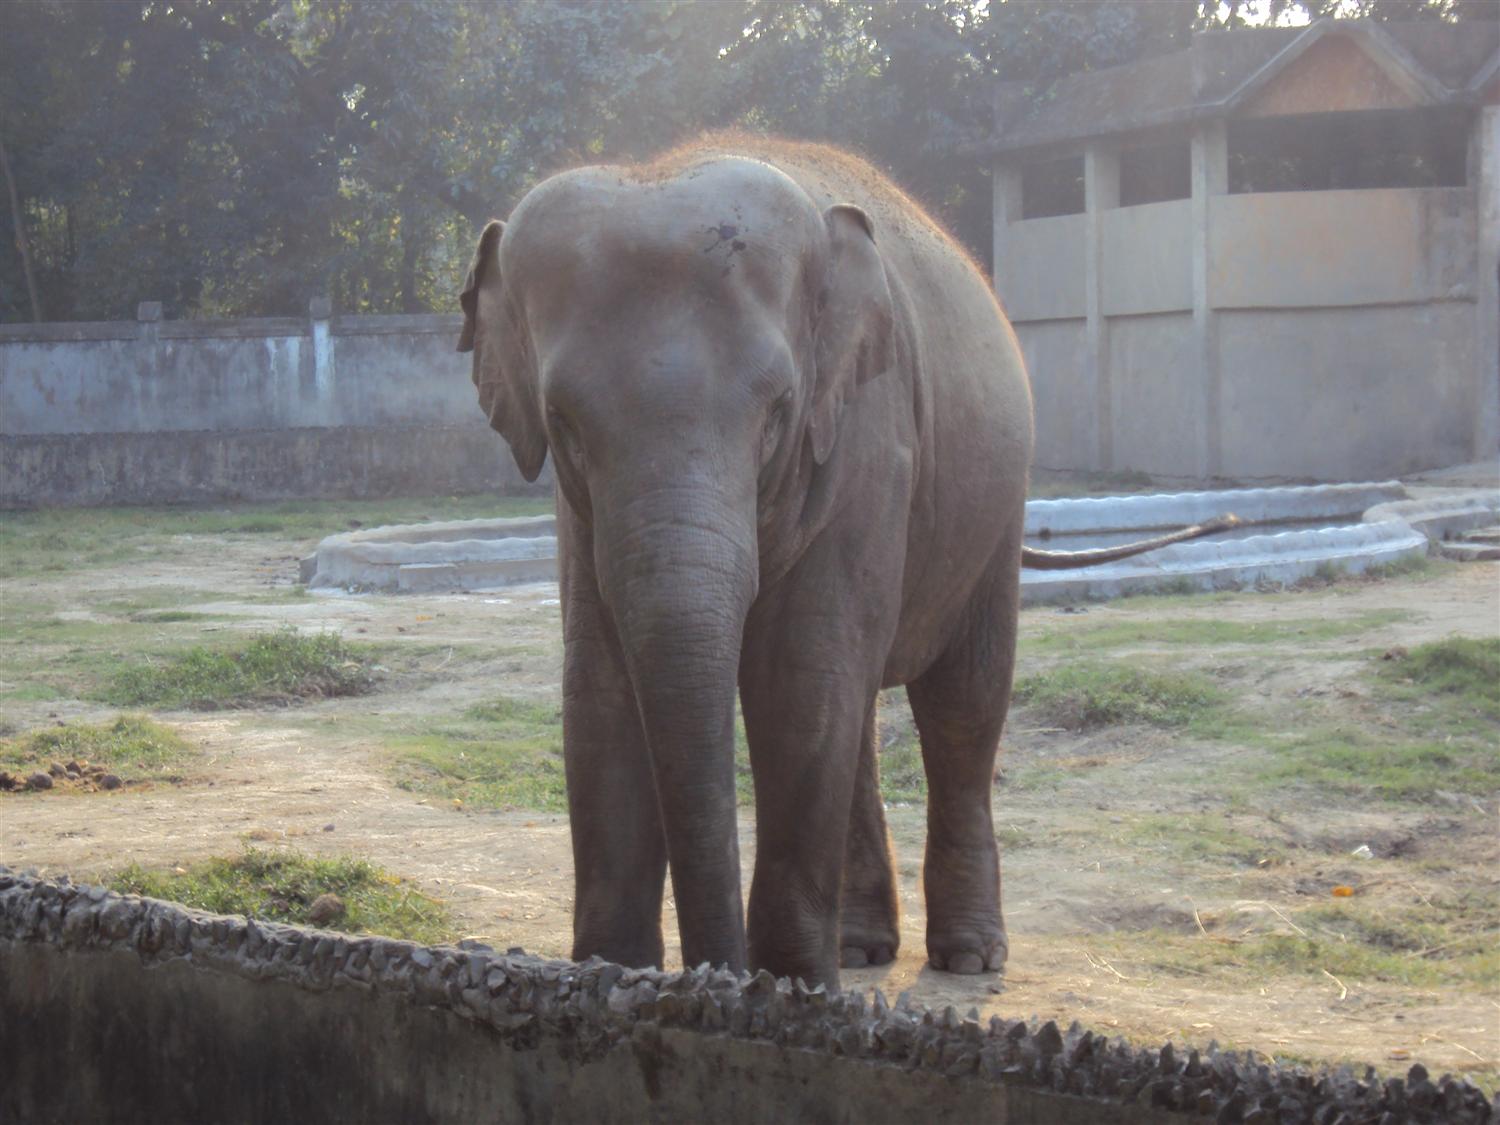 Elephant at alipur zoo photo